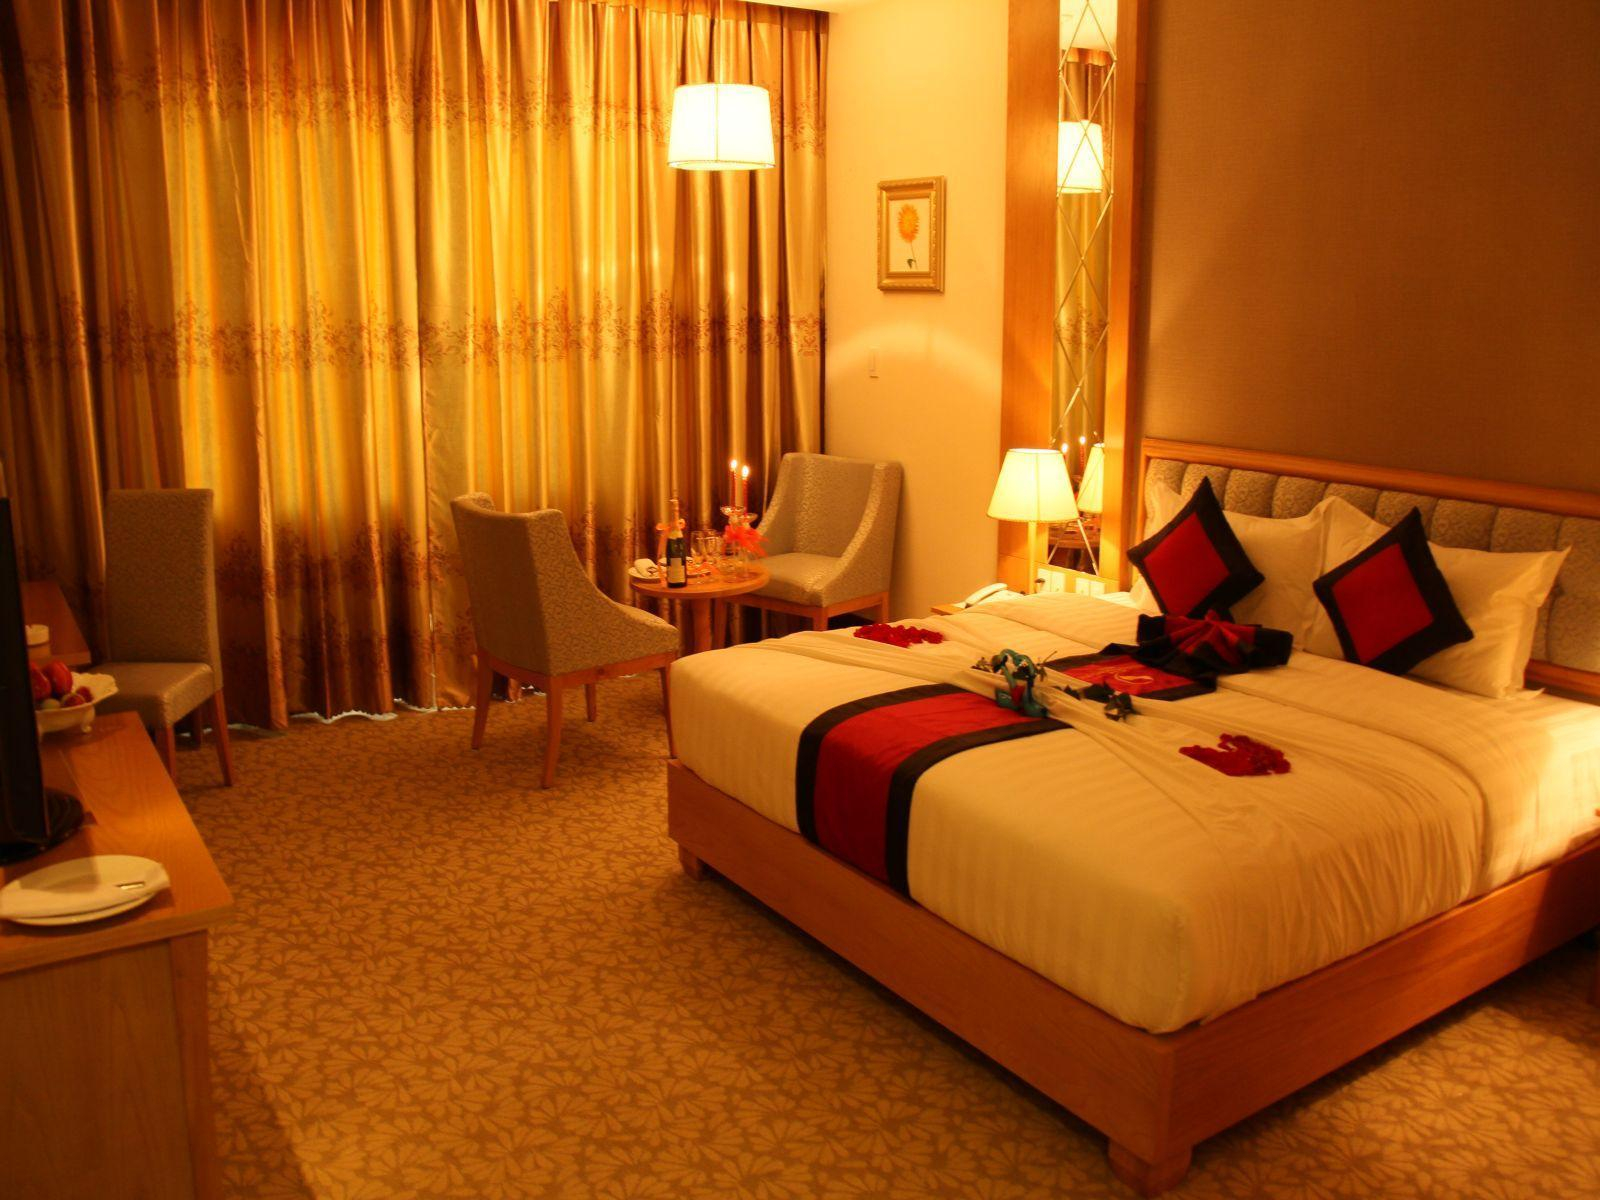 Bedroom, Sai Gon Dong Ha Hotel, Đông Hà